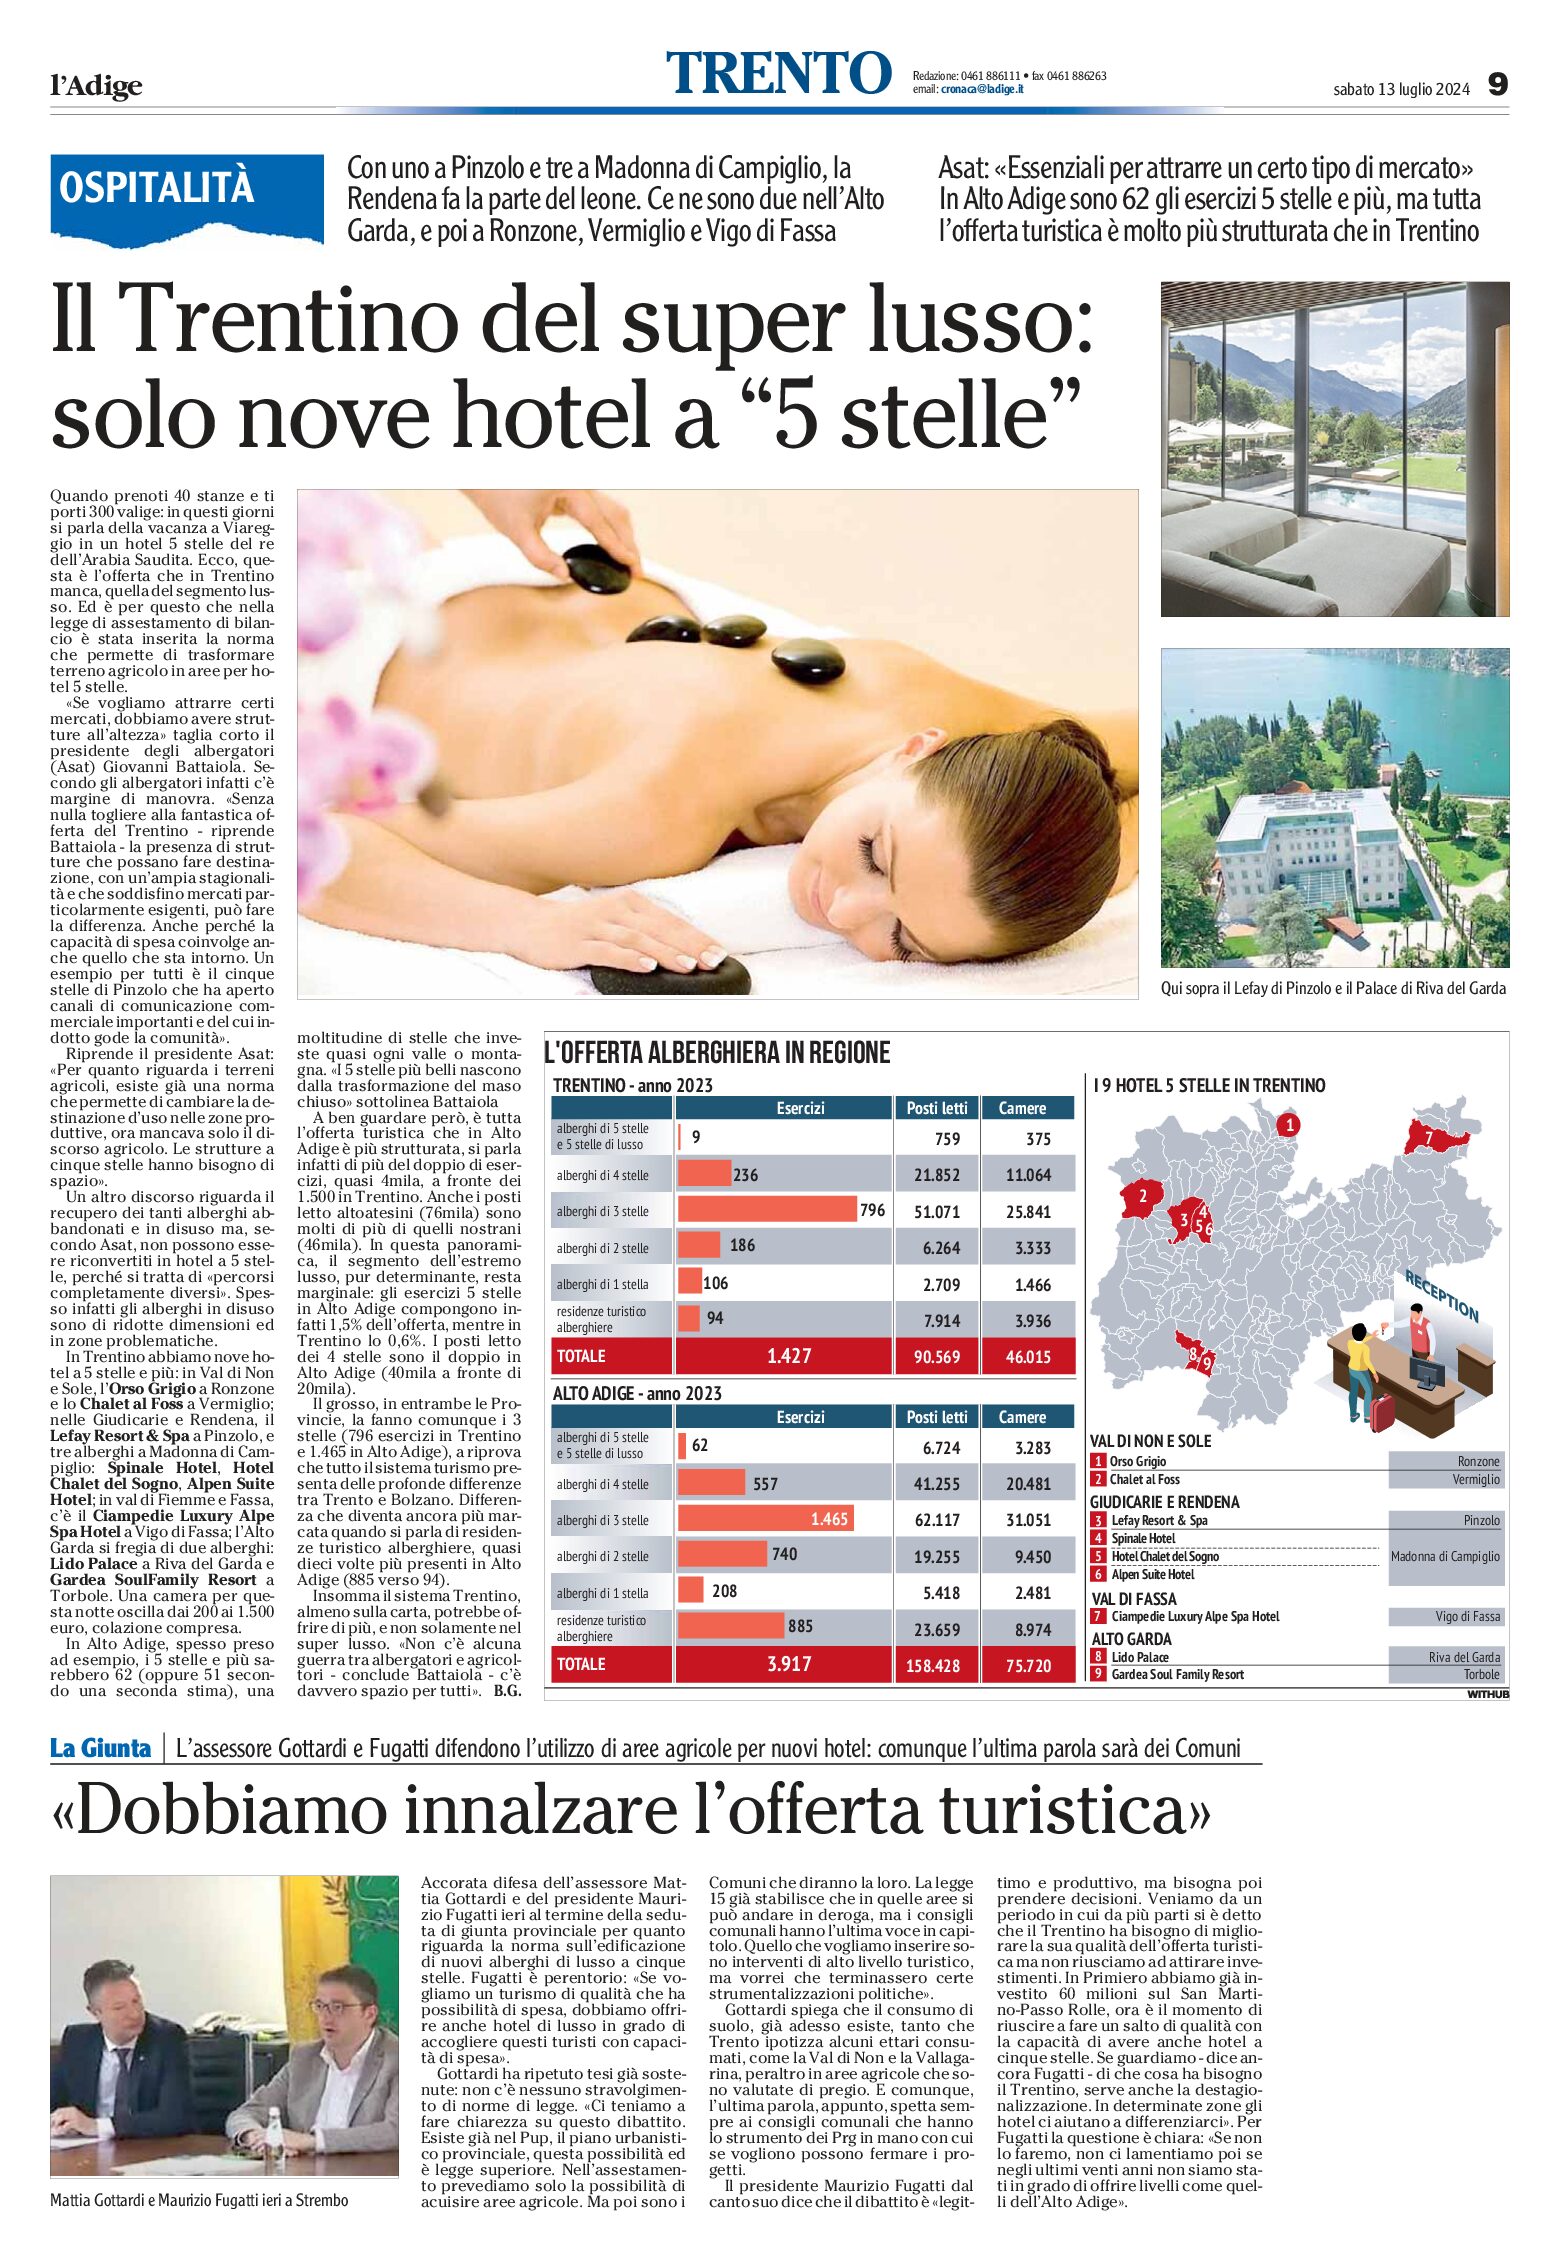 Trentino: super lusso, solo nove hotel a “5 stelle”